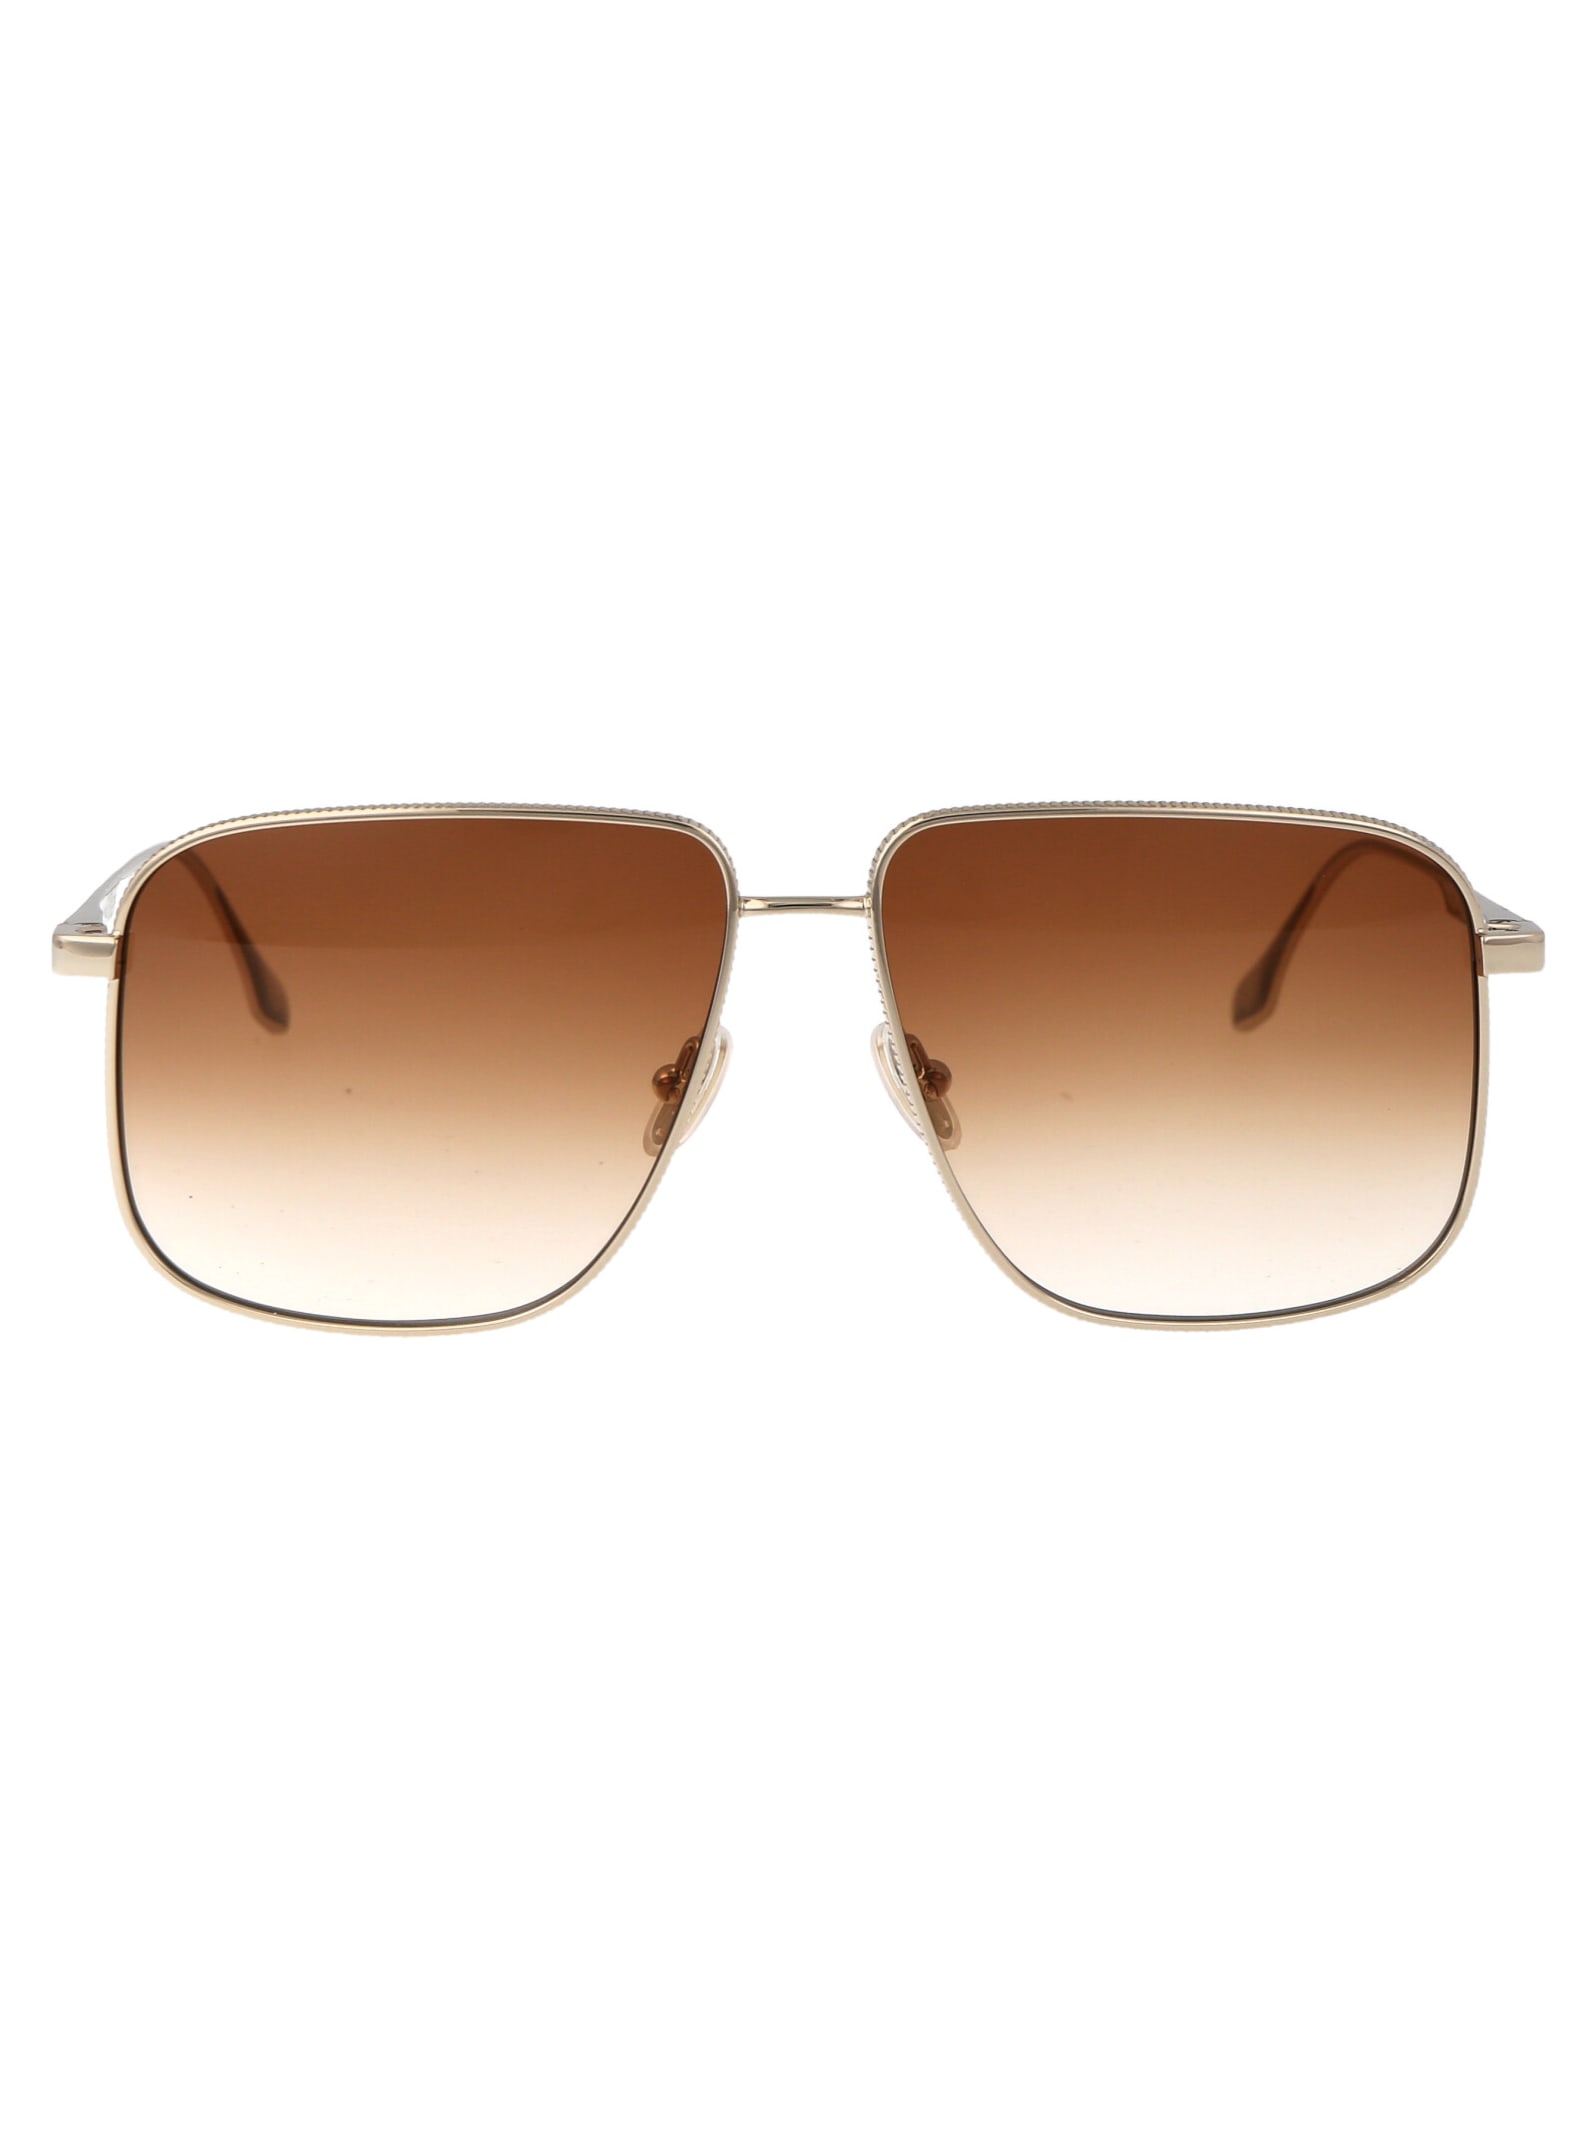 Victoria Beckham Vb243s Sunglasses